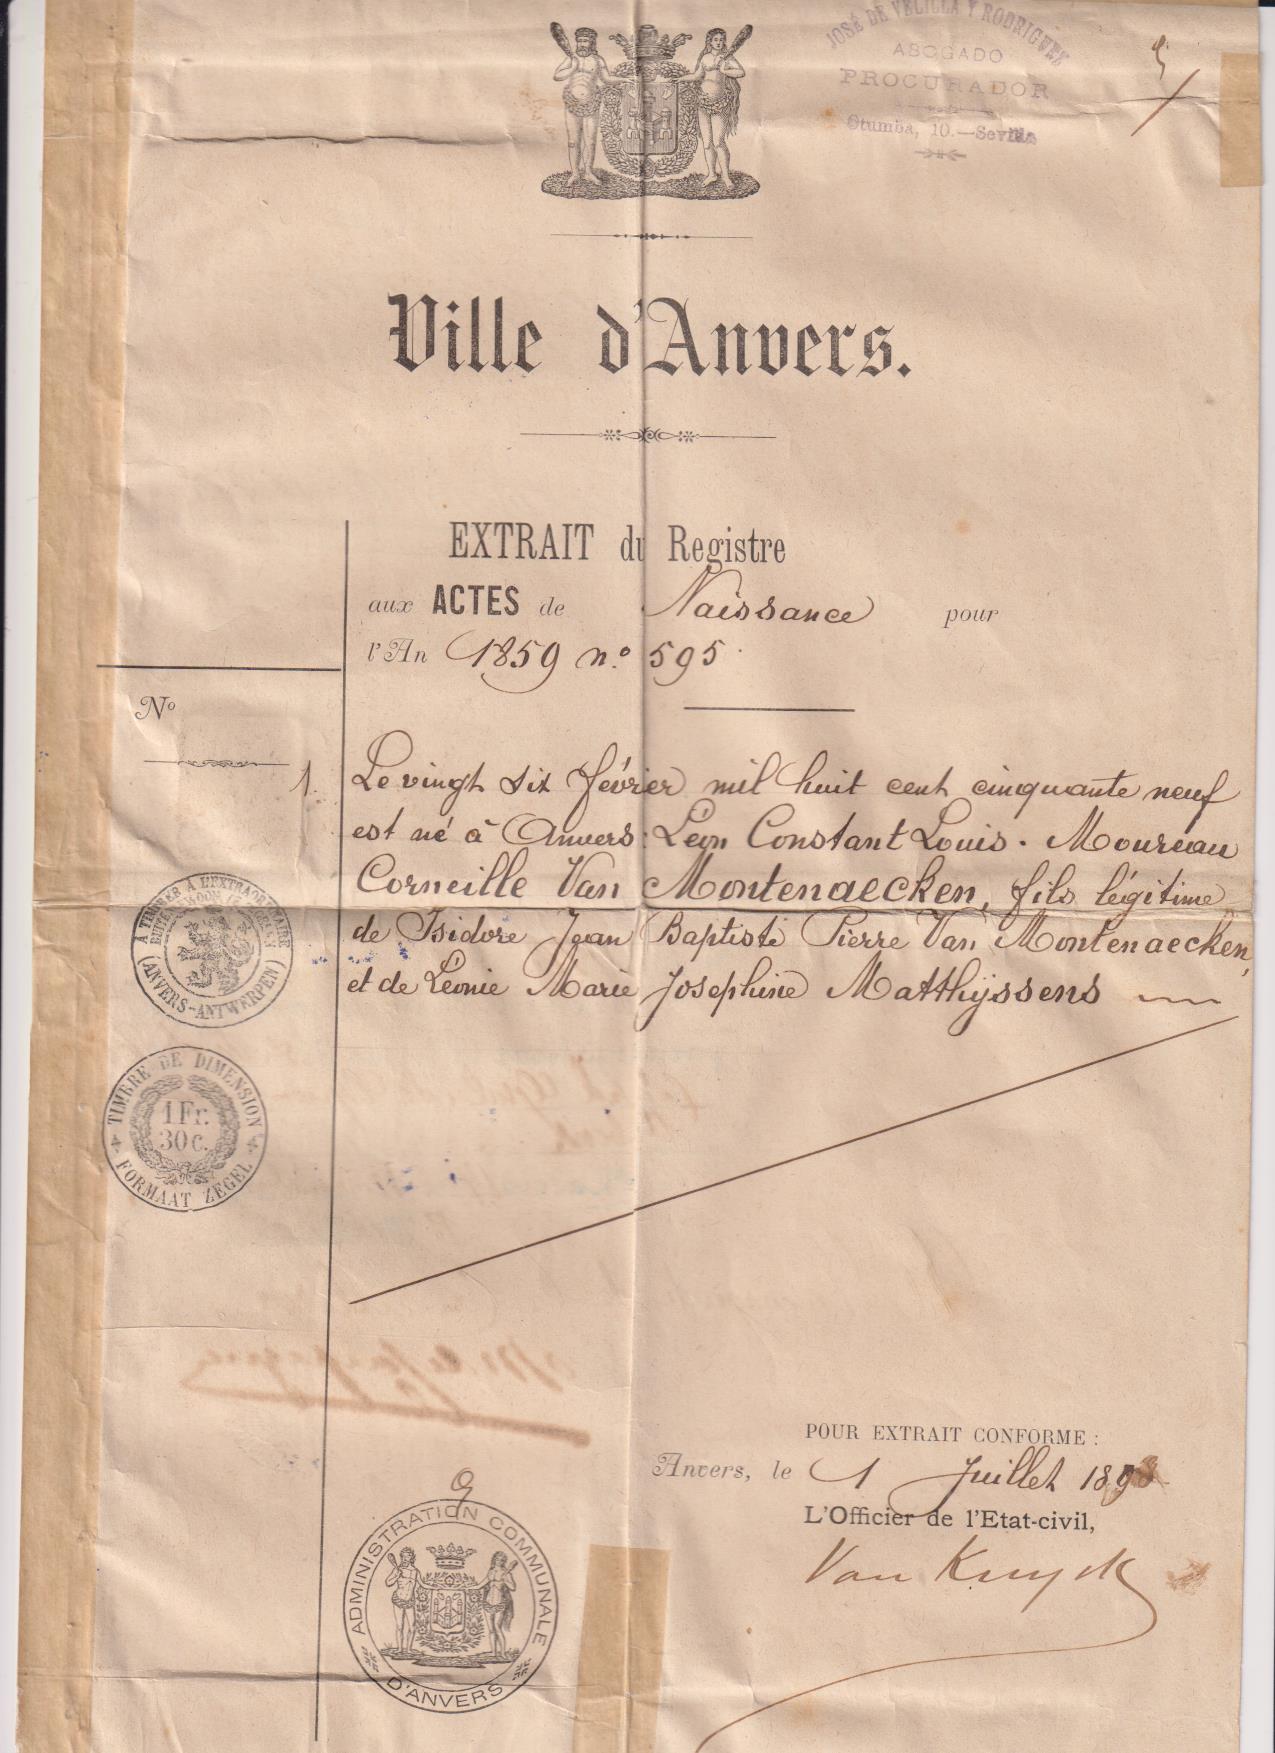 Partida de nacimiento, Anvers, 1898. Visto y firmado por el Consul Español. Timbres -